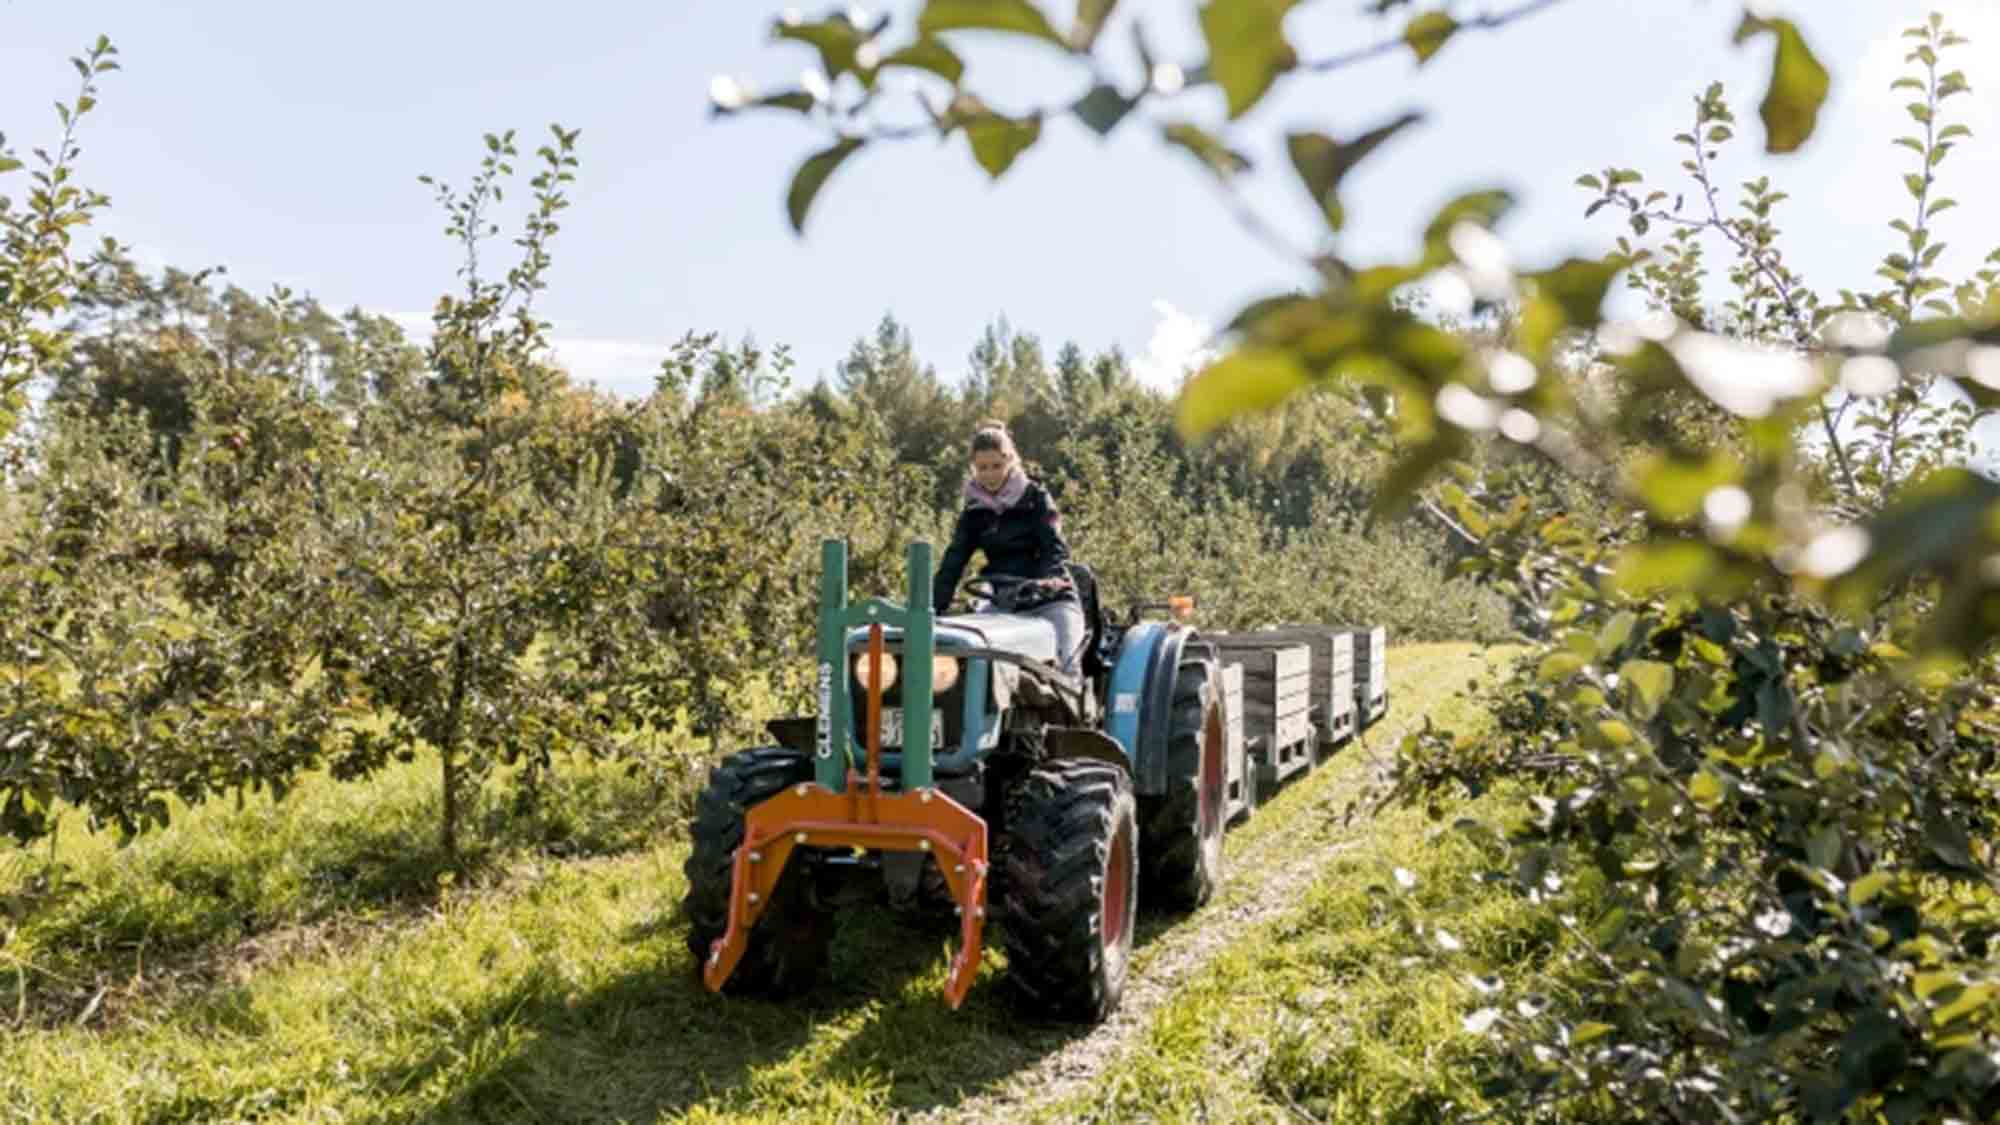 Apfelrunde und Zwiebelkuchenfahrt, am Bodensee lädt der Genussherbst 2023 zum entspannten Aktivsein ein